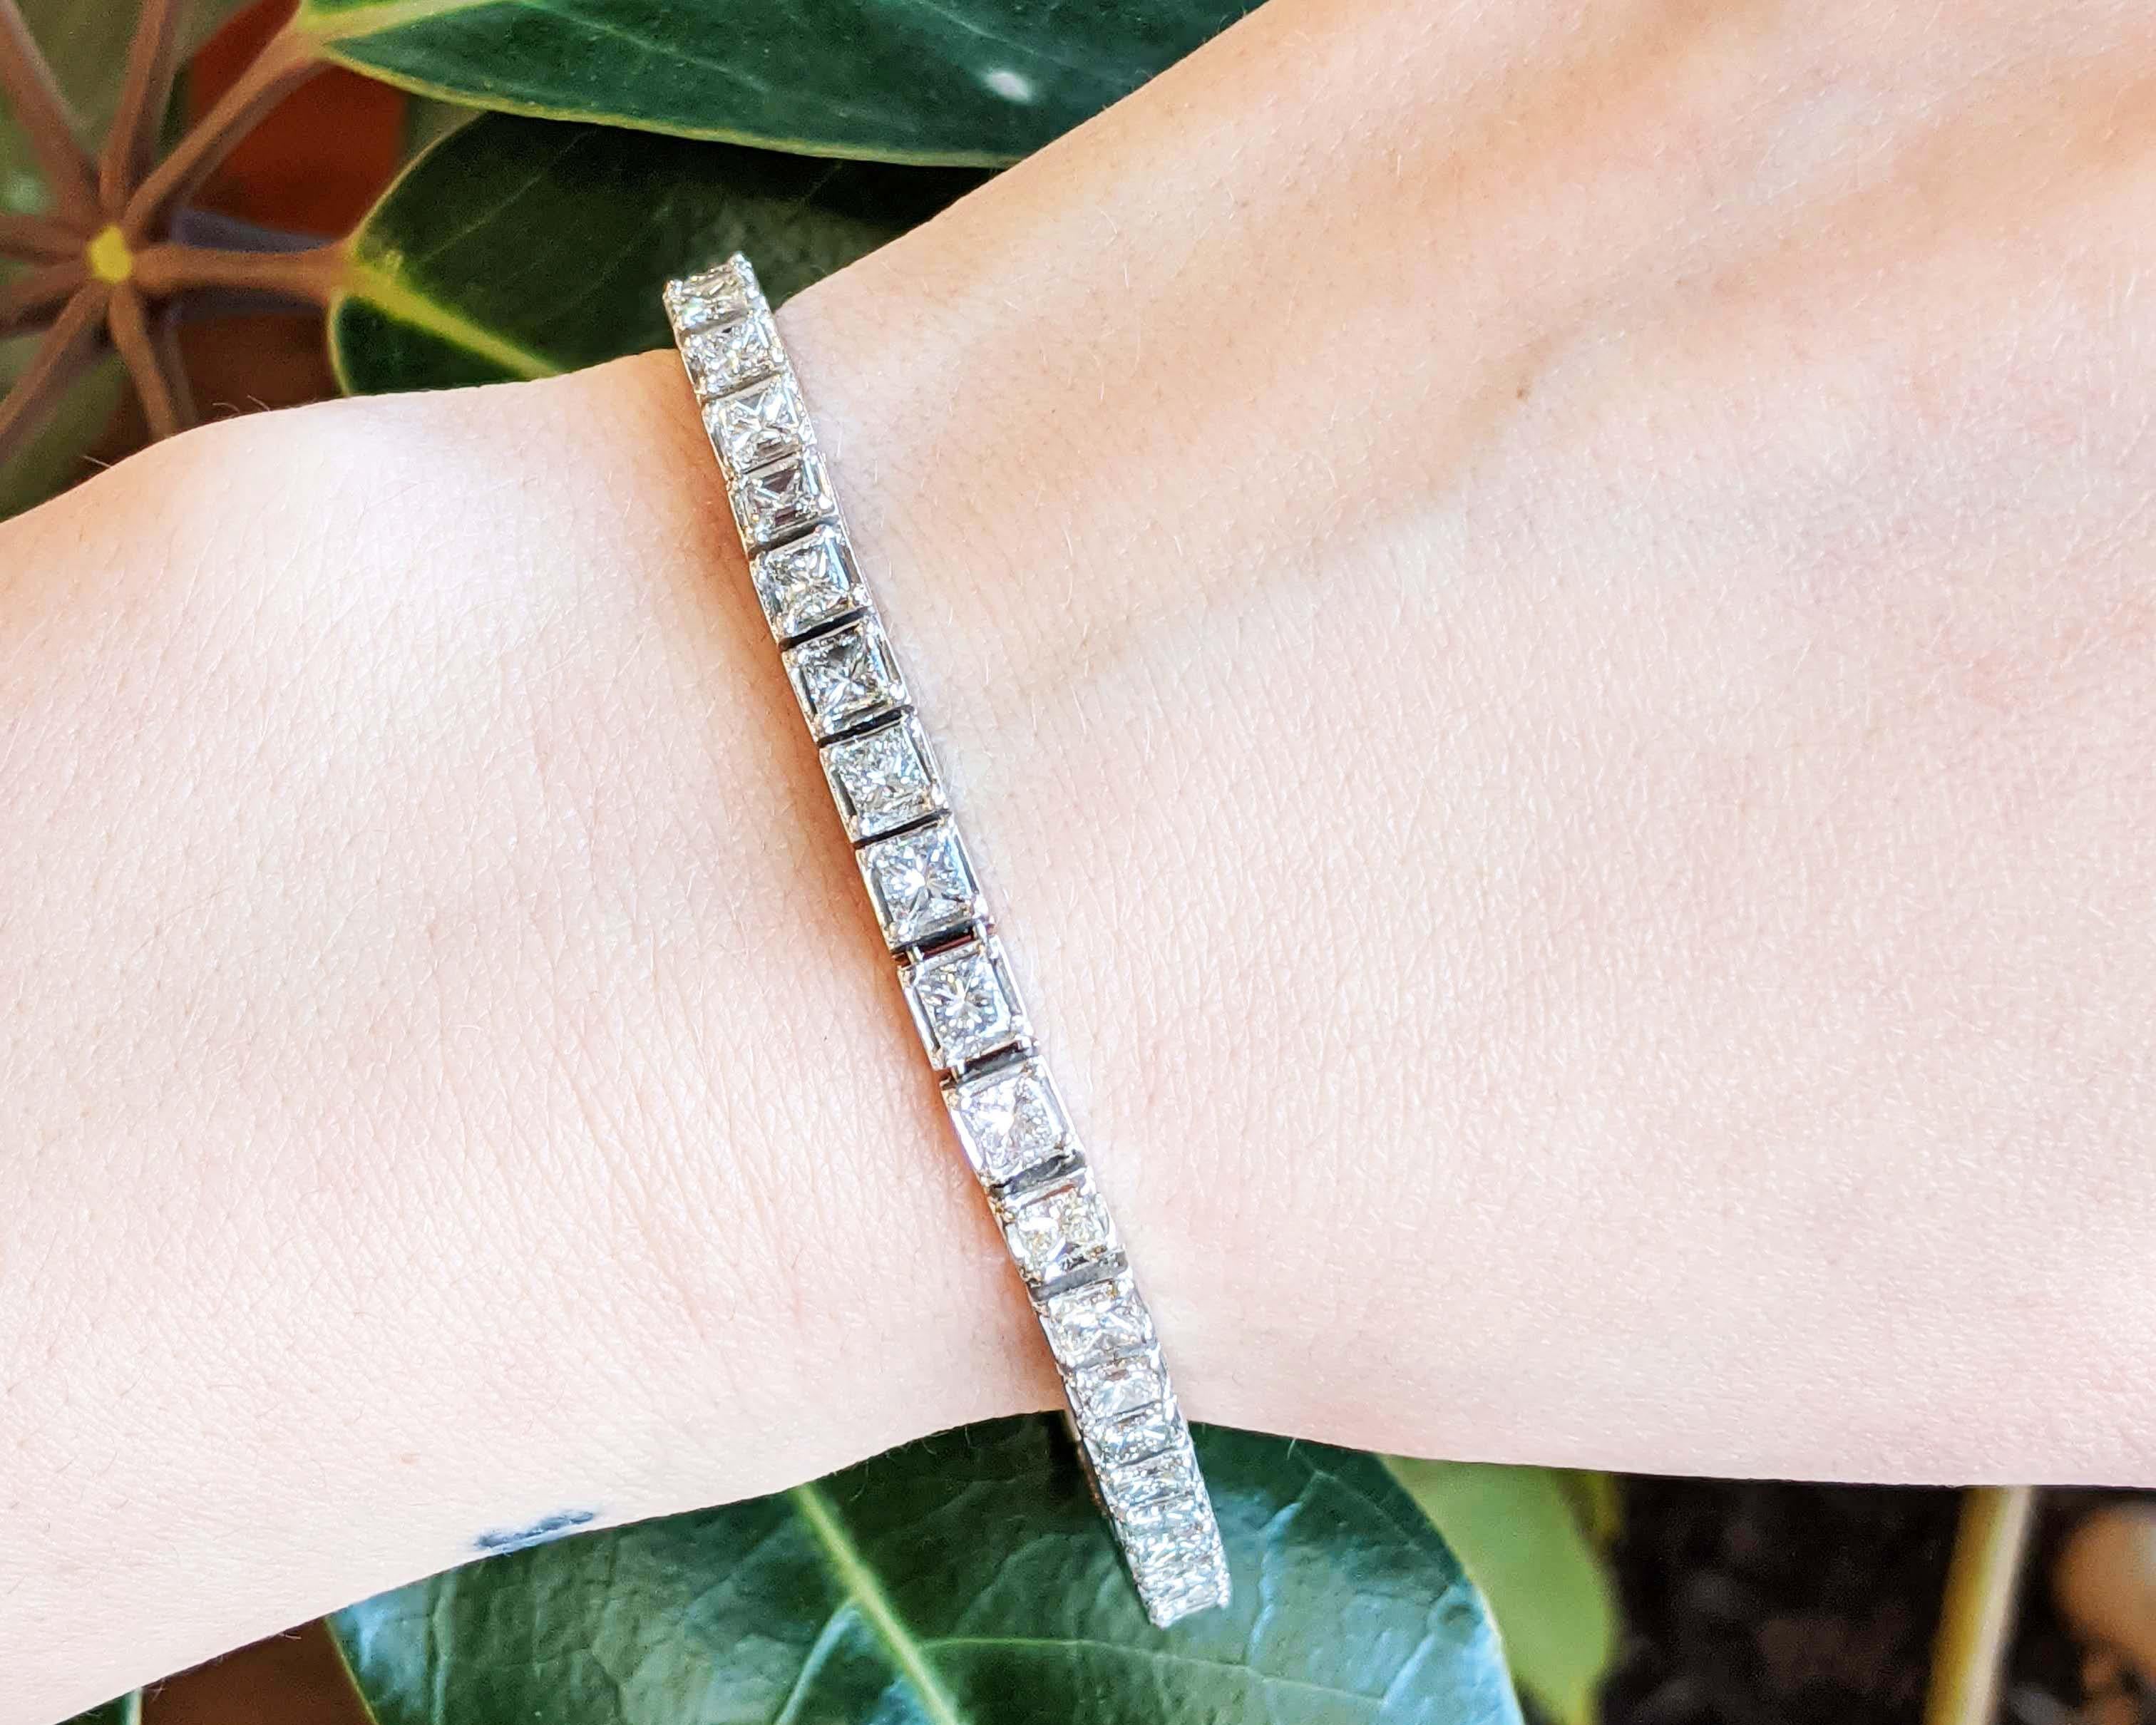 Dies ist ein elegantes Diamantarmband aus strahlend weißem Platin mit strahlend weißen Diamanten im Prinzessschliff! Dieses Armband nimmt den klassischen Linienarmband-Look auf und verleiht ihm durch die Verwendung von 39 atemberaubenden Diamanten